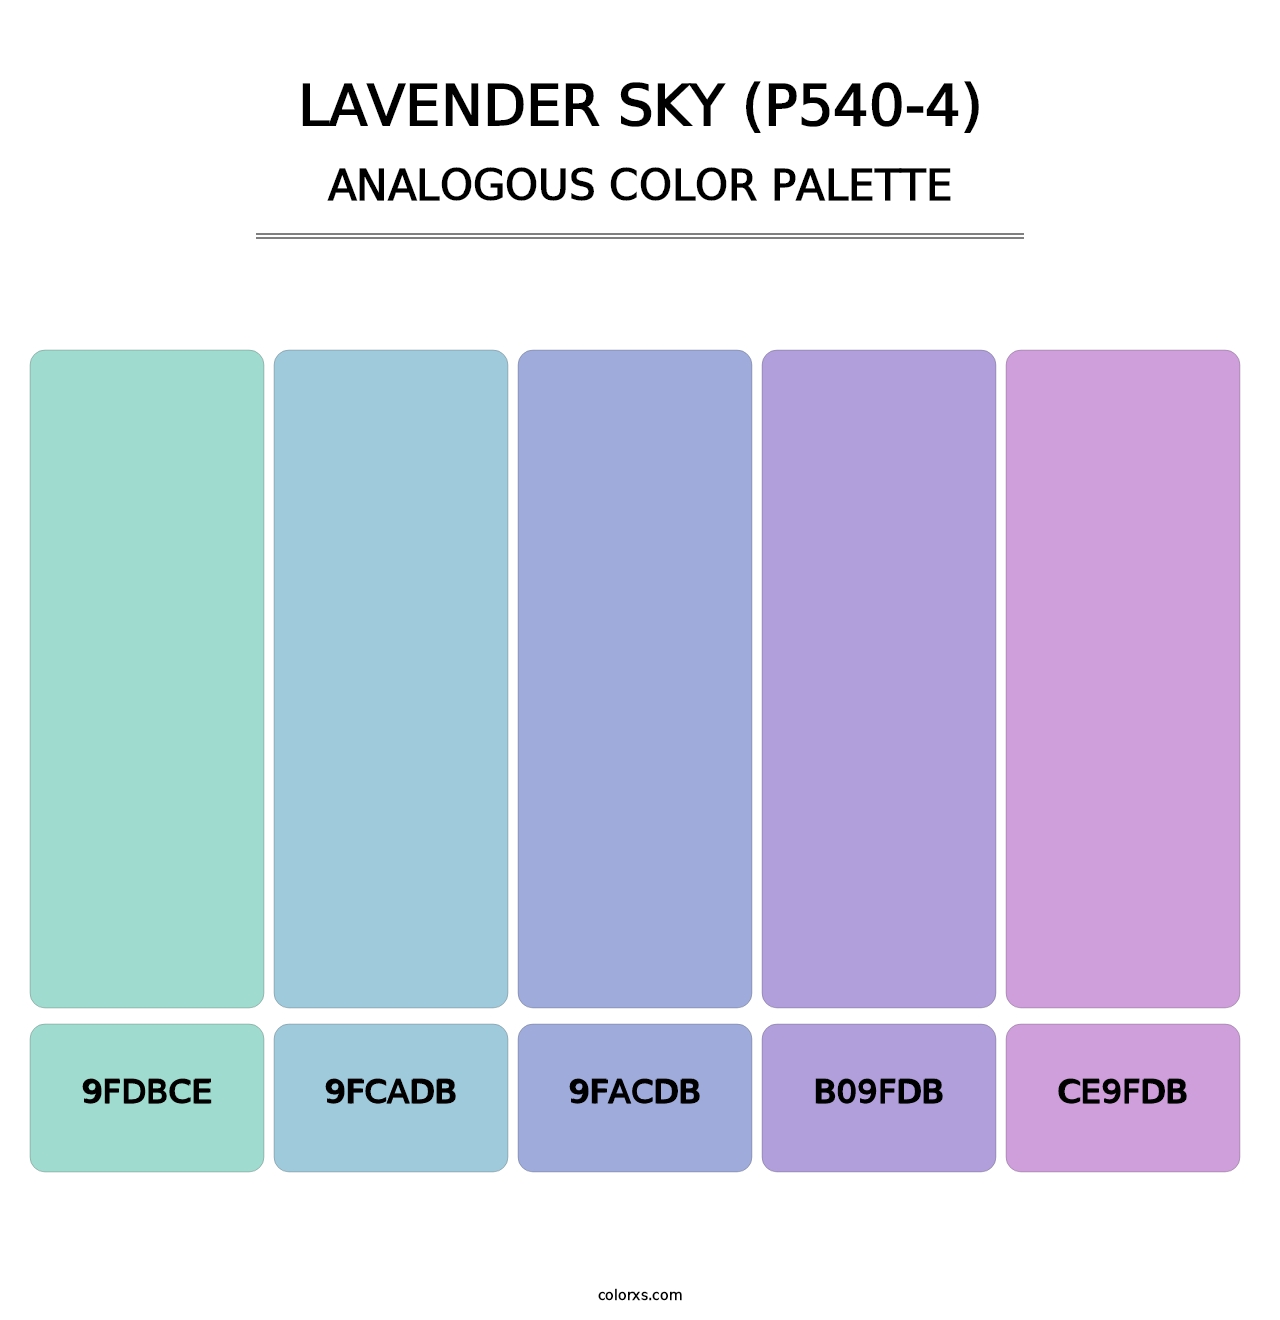 Lavender Sky (P540-4) - Analogous Color Palette